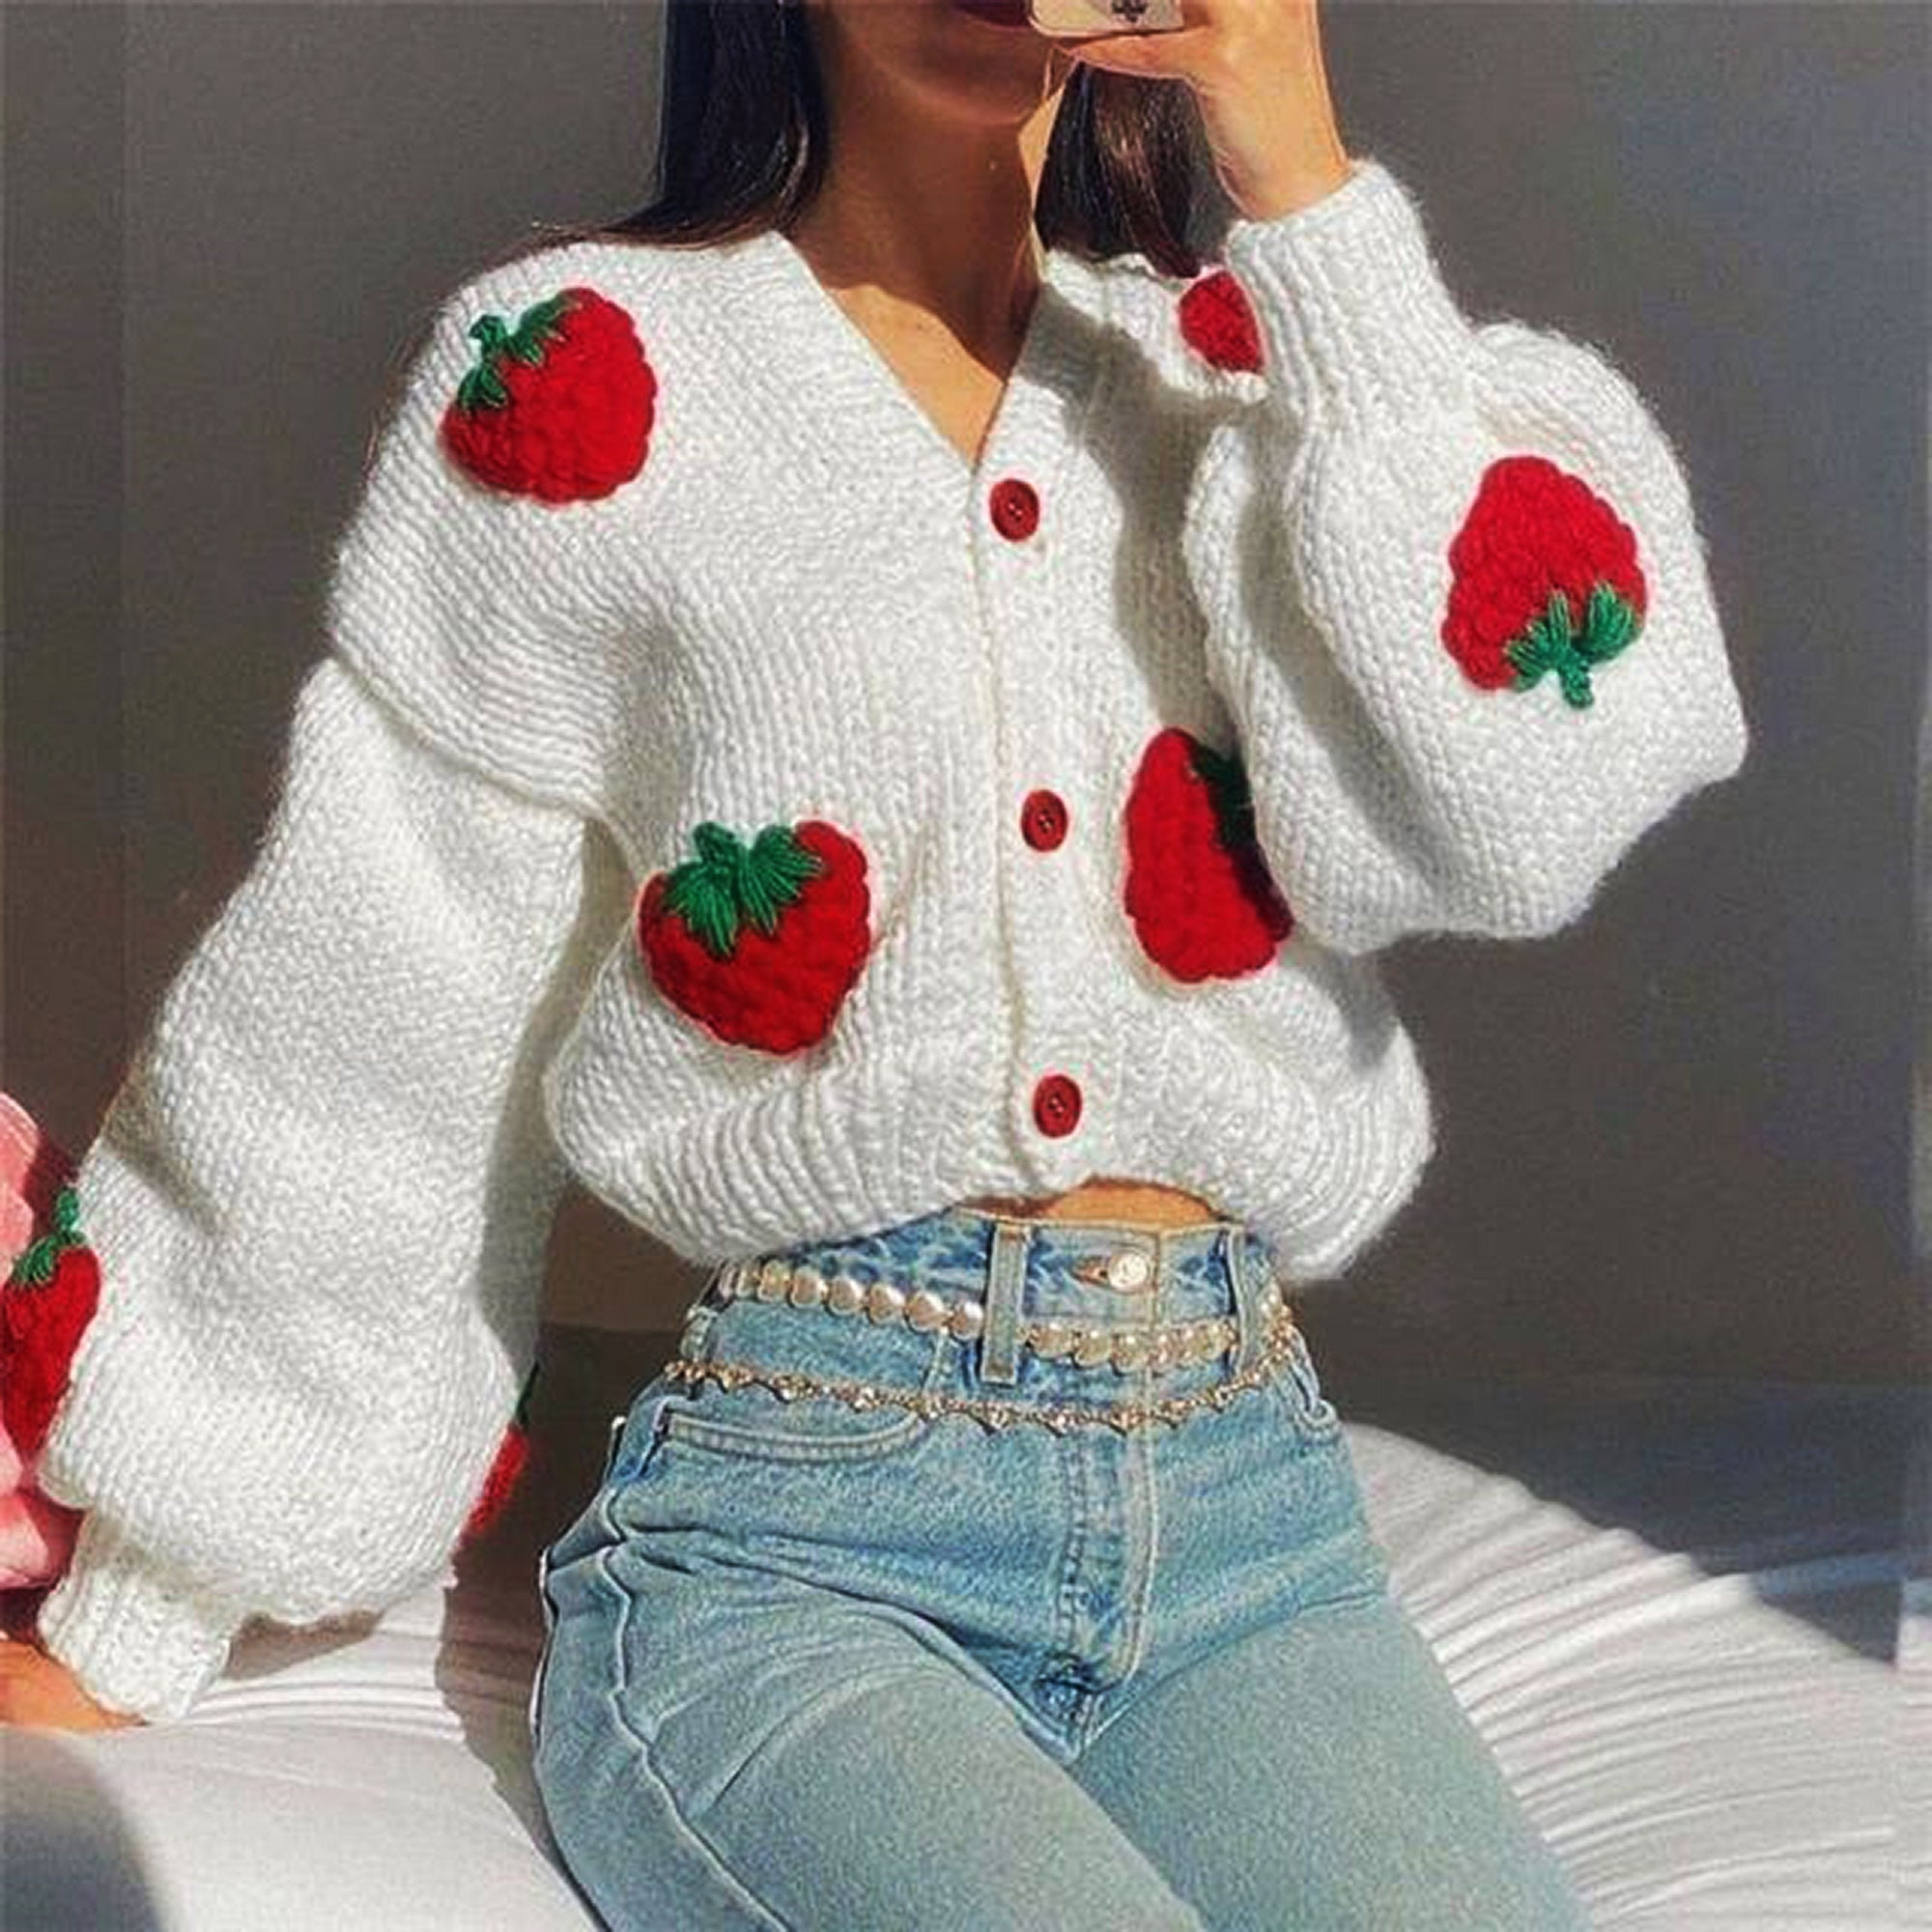 Crochet Strawberry Cardigan Knitted Women Sweater Women - Etsy